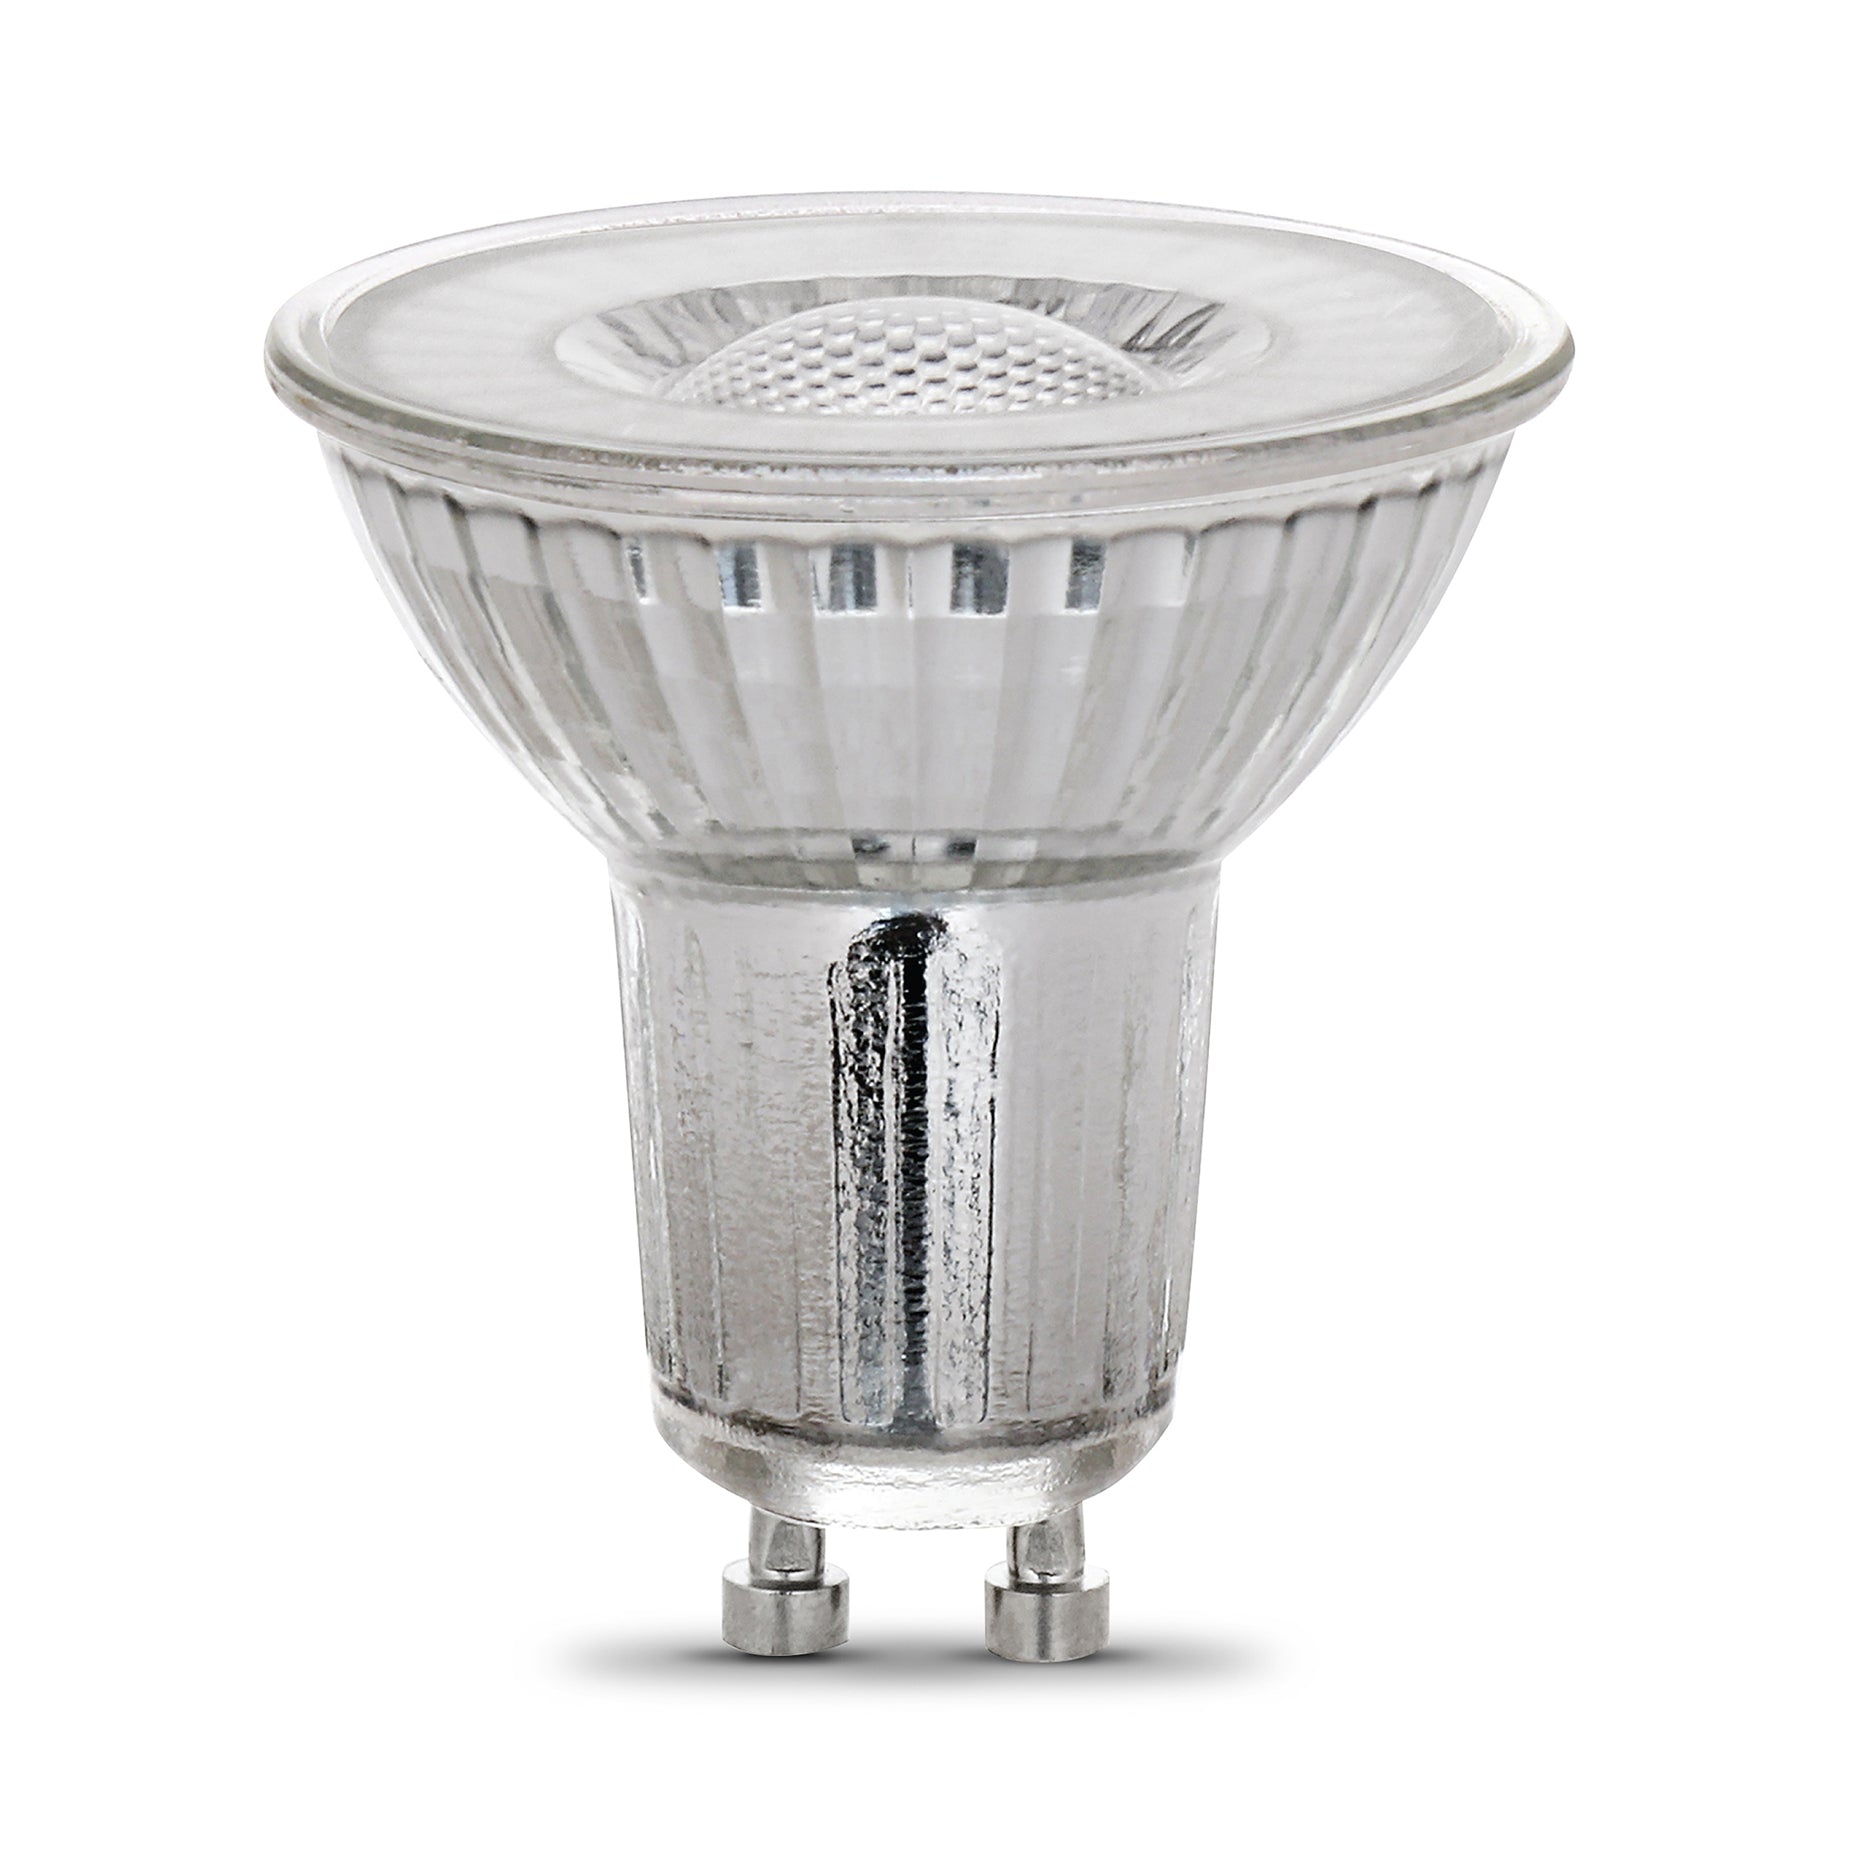 MR16 LED bulbs for Track Lighting , 35W, 50W, GU10 Base, Bi-Pin, Dimma